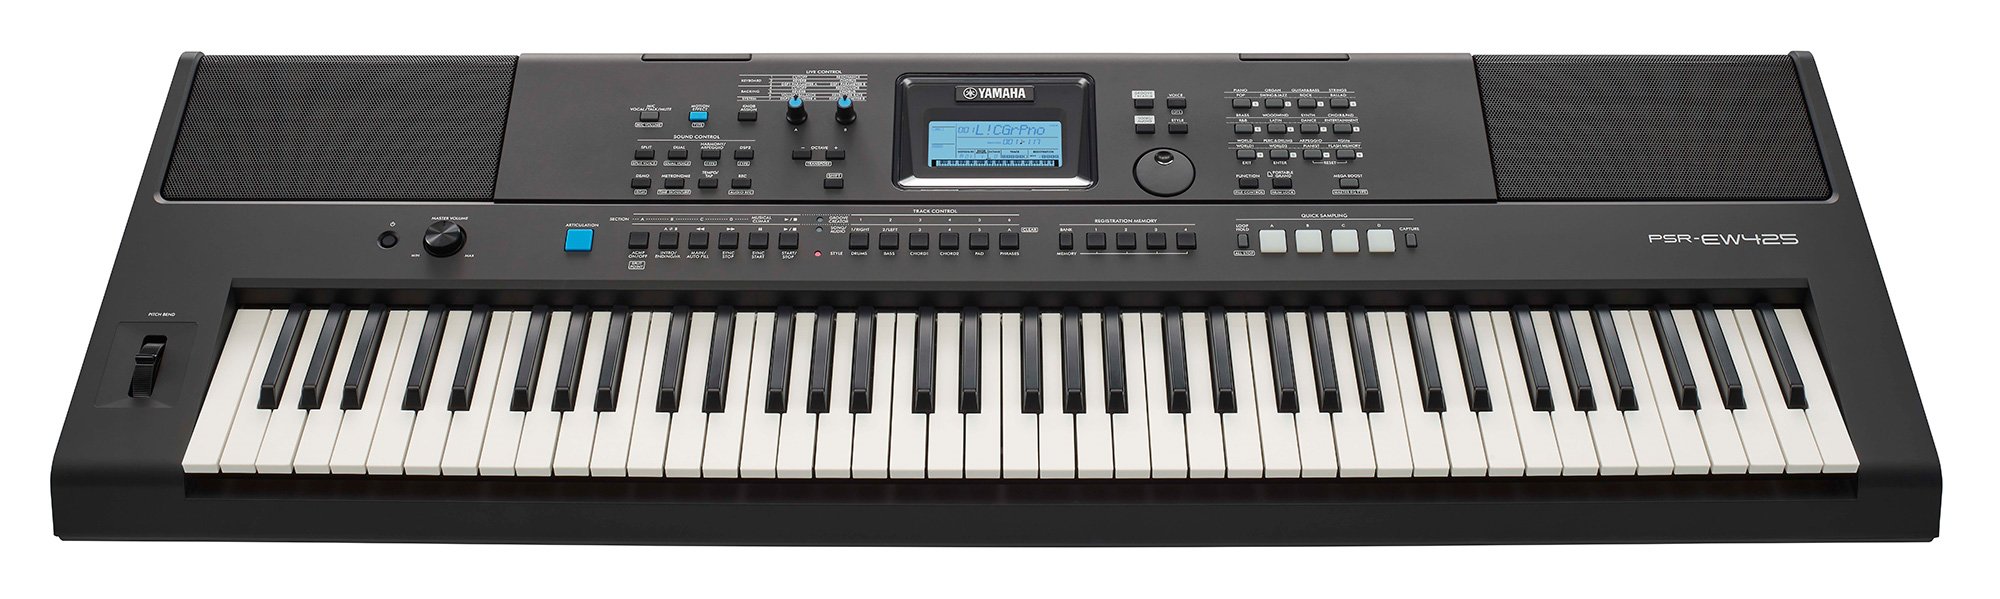 Đàn Organ điện tử/ Portable Keyboard - Yamaha PSR-EW425 (PSR EW425) - Màu đen - Hàng chính hãng